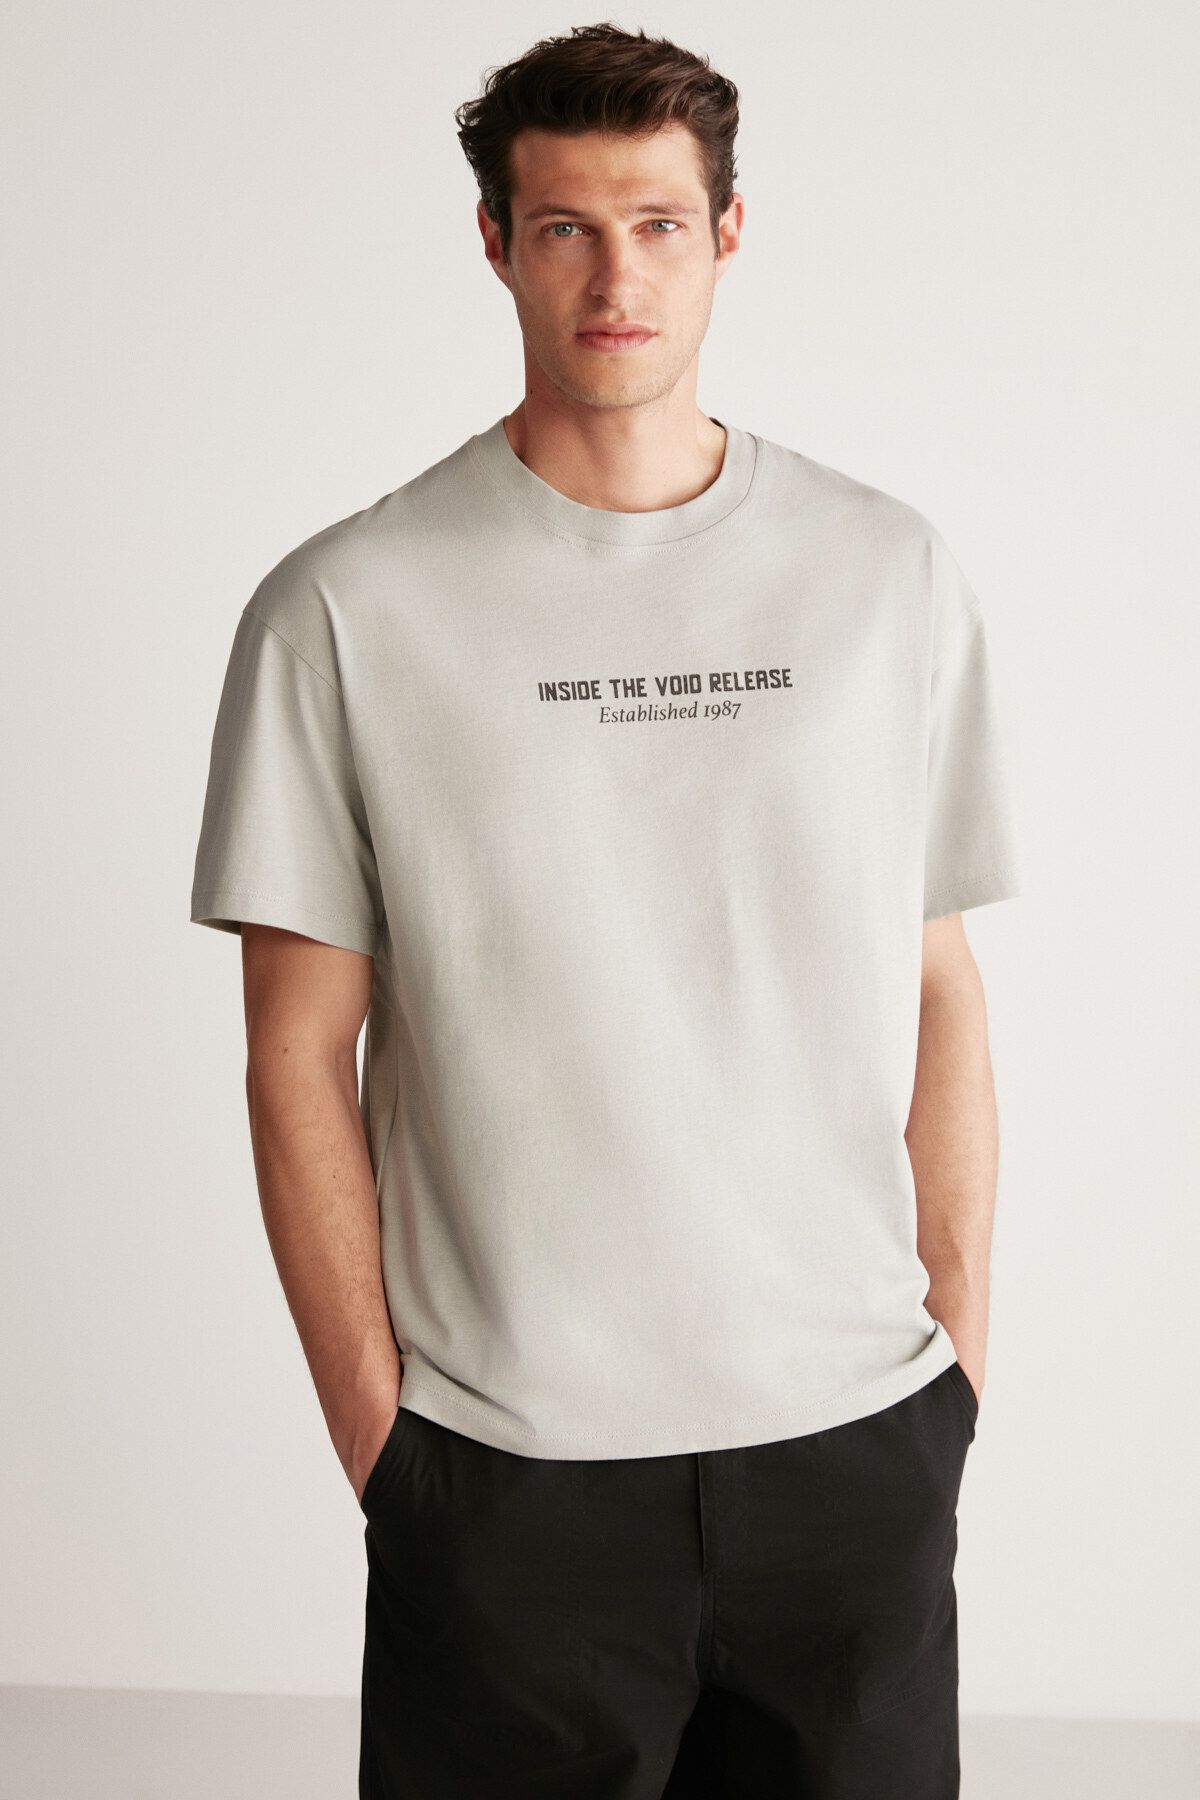 Louis Vuitton Erkek T-Shirt Modelleri, Fiyatları - Trendyol